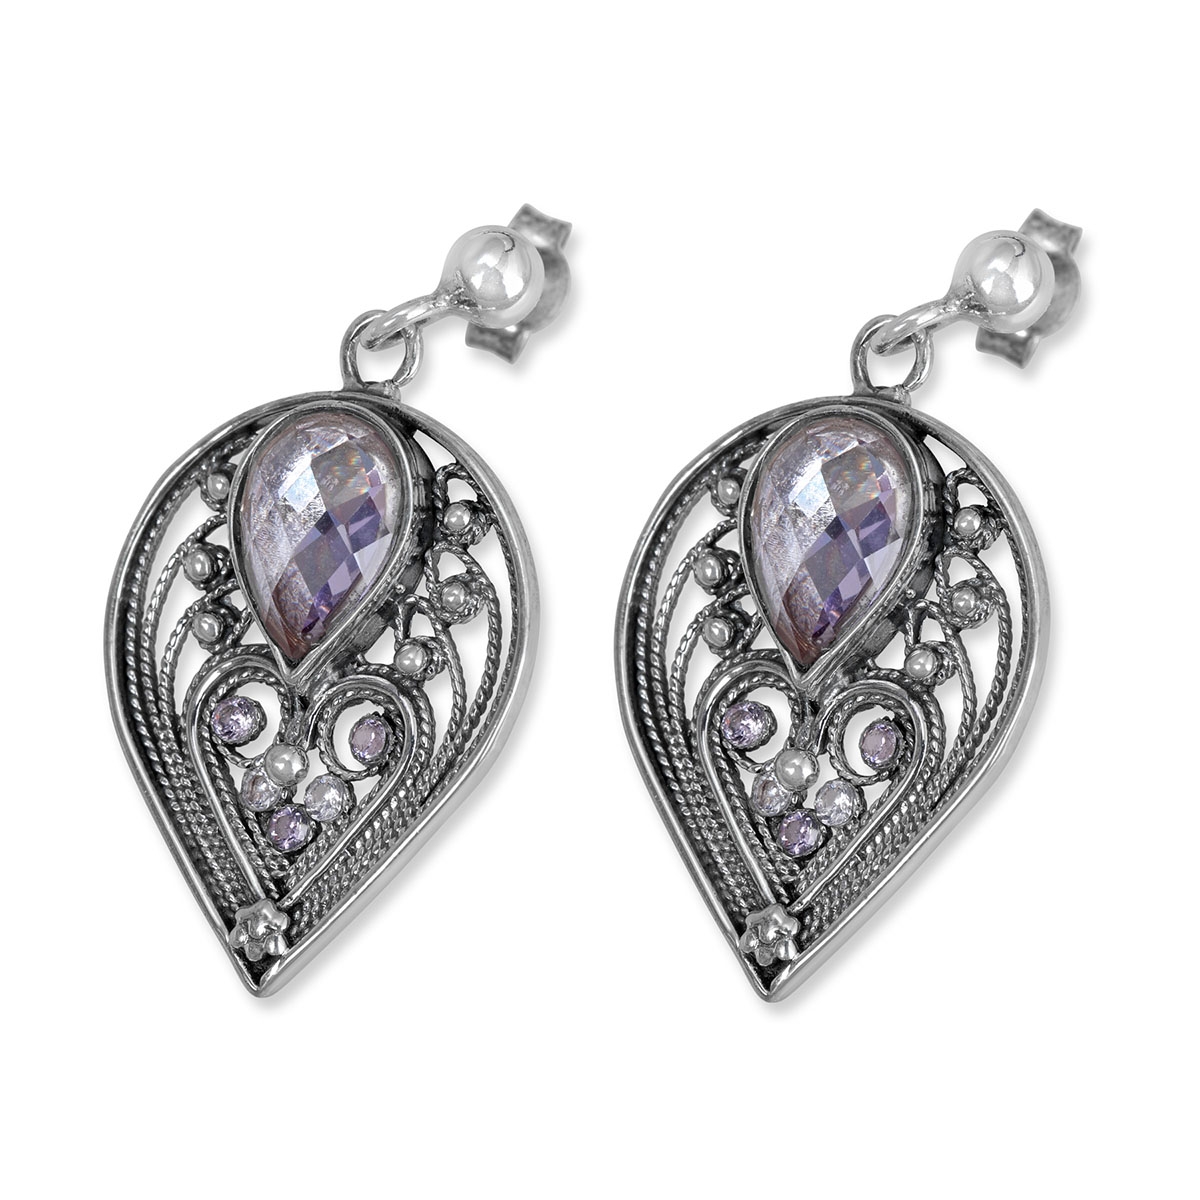 Rafael Jewelry Filigree Teardrop Lavender Sterling Silver Earrings - 1